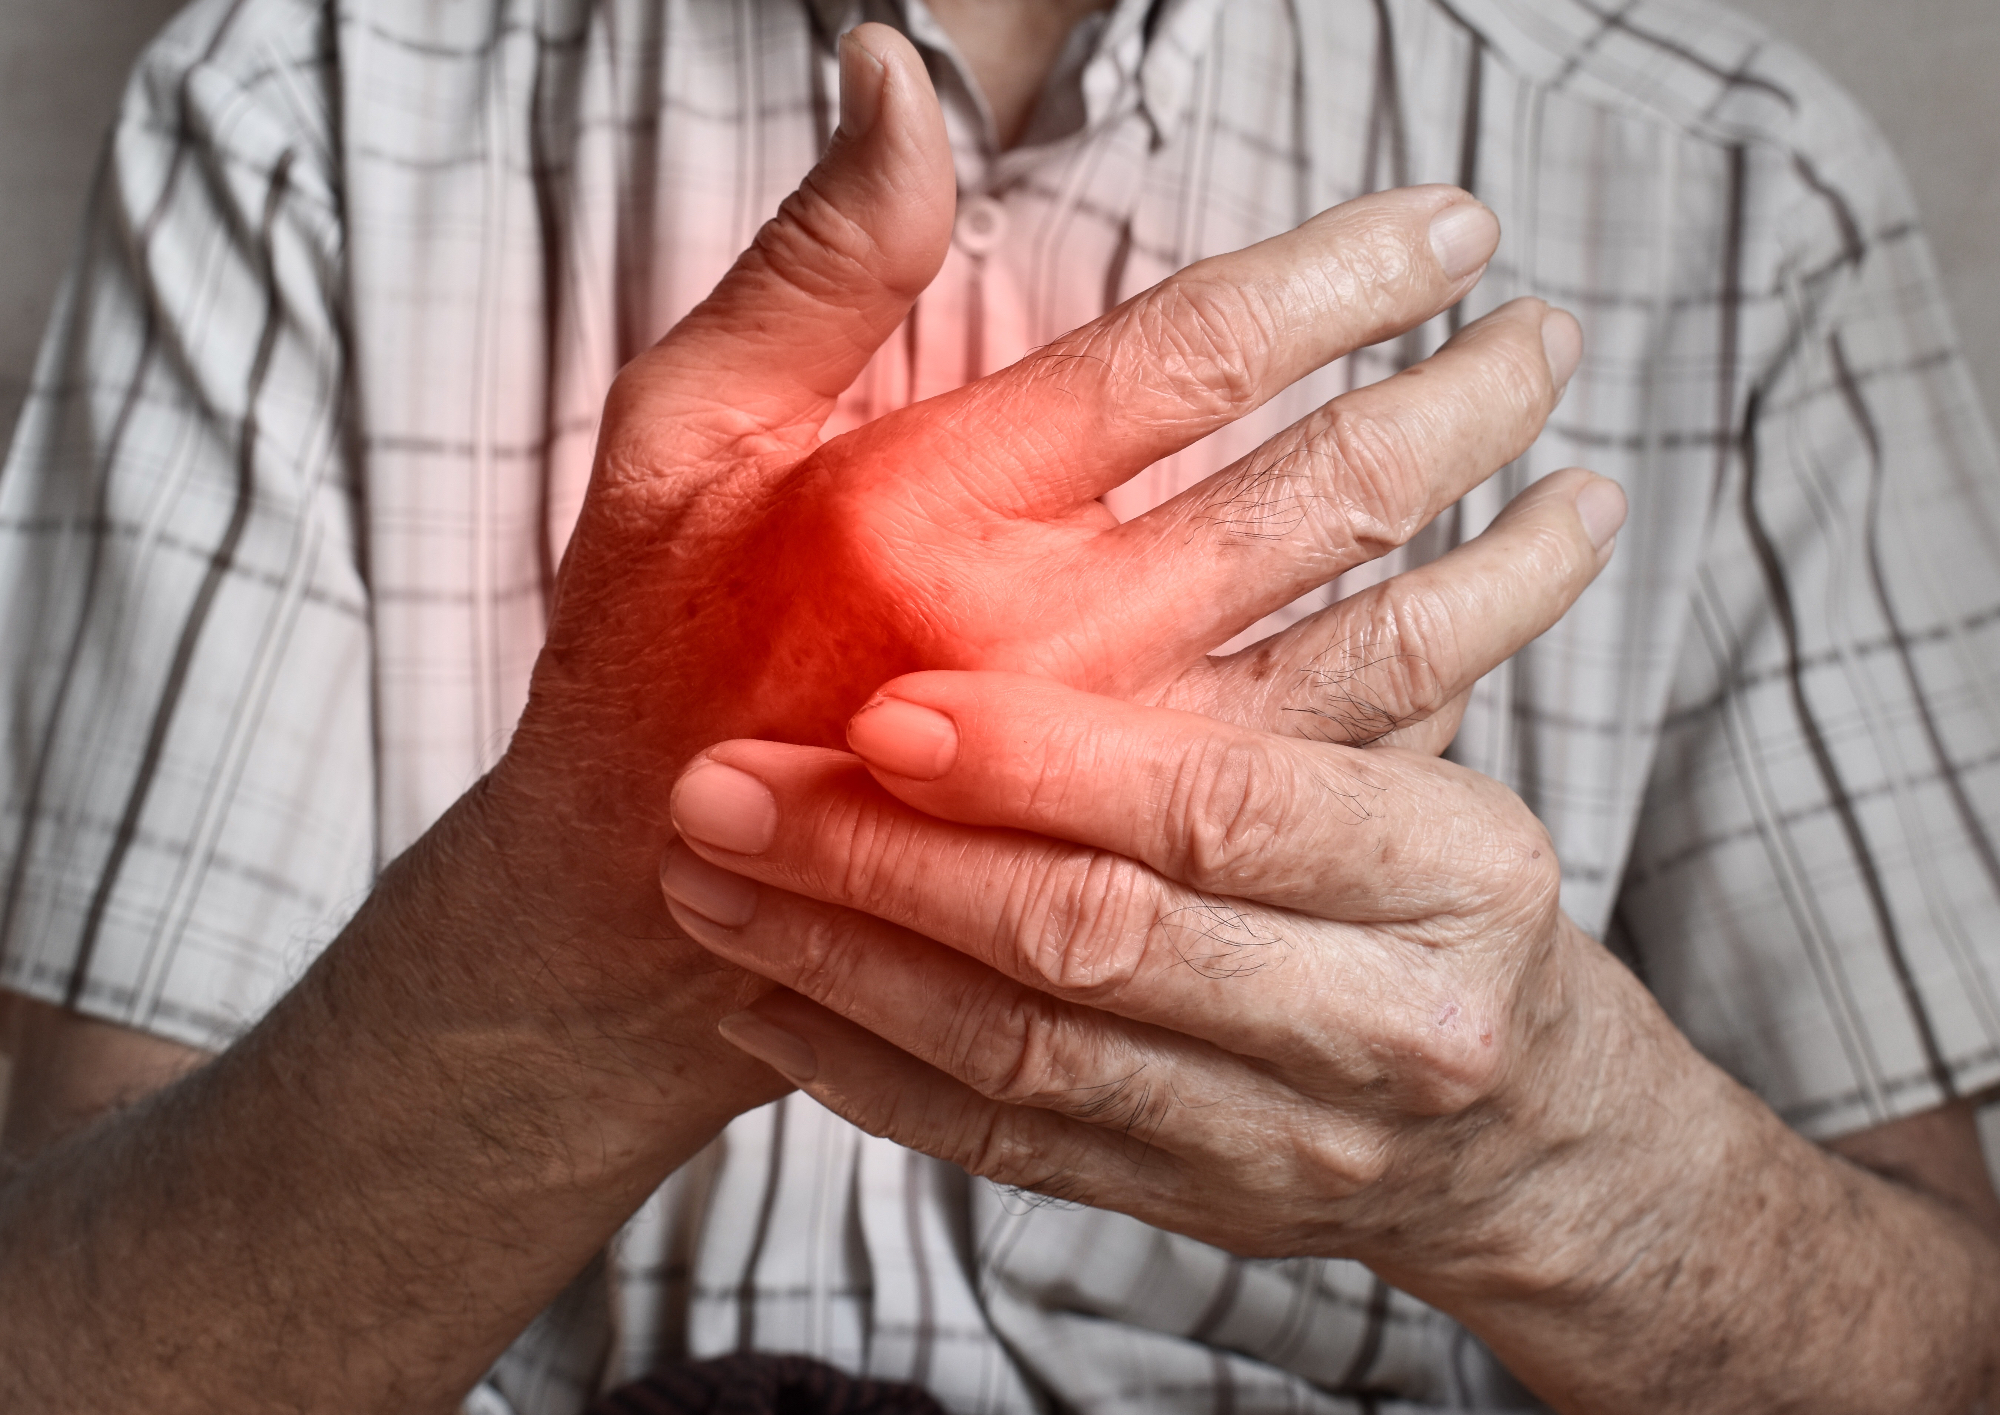 Revmatoidni artritis je nekaj kar lahko doleti vsakega